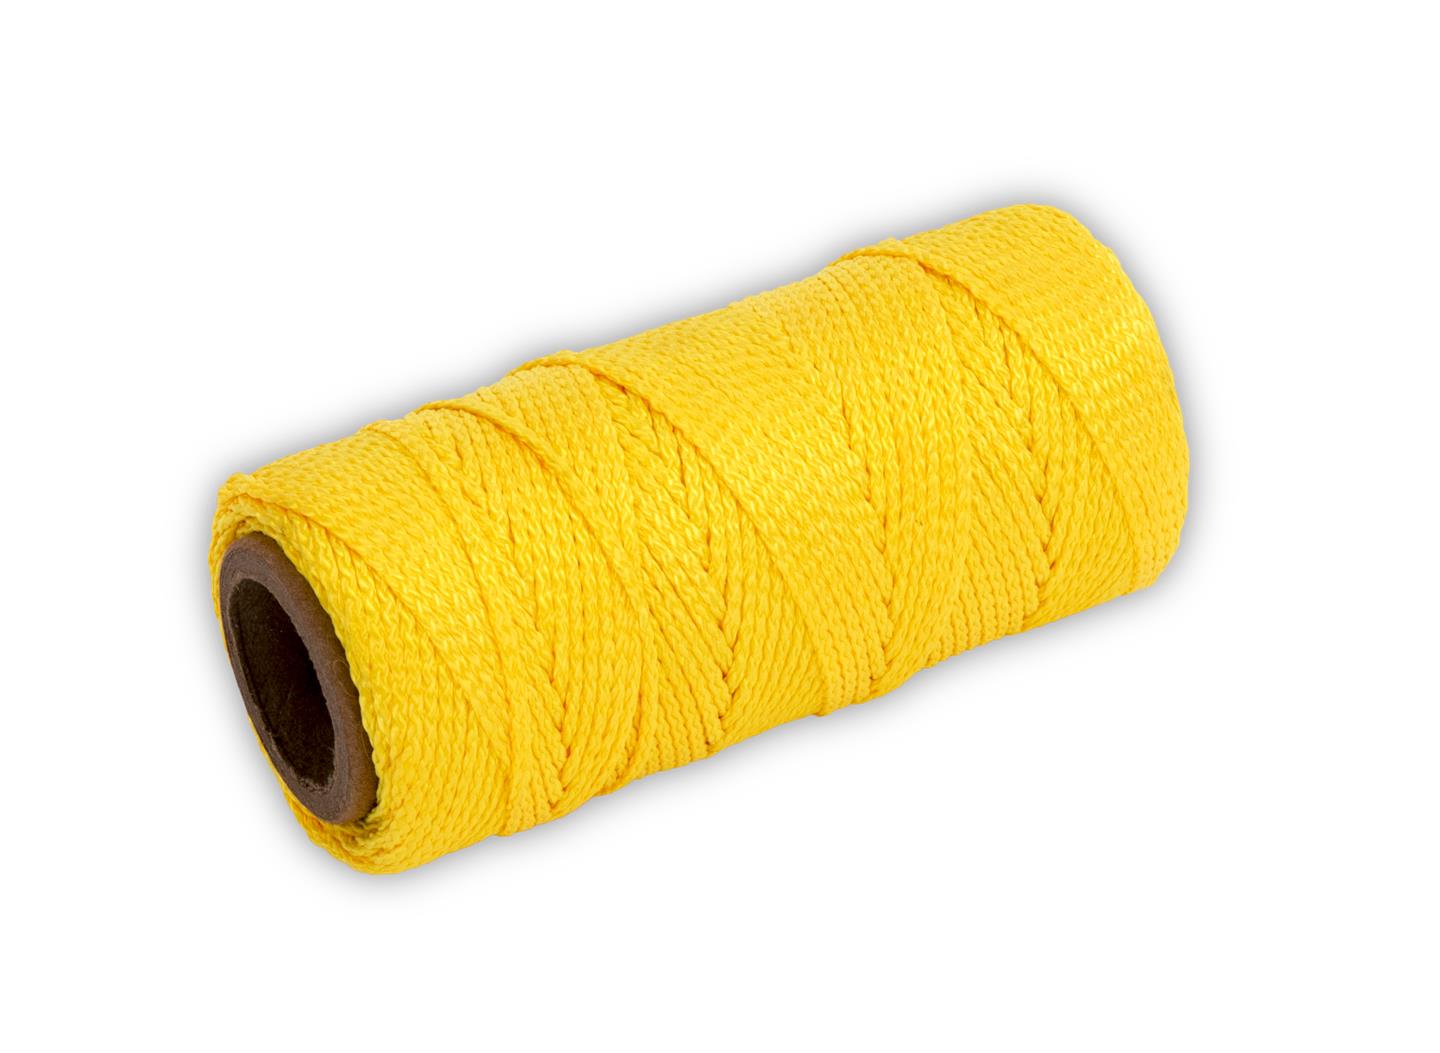 Marshalltown 10240 Braided Nylon Mason's Line 125' Yellow, Size 18 4" Core